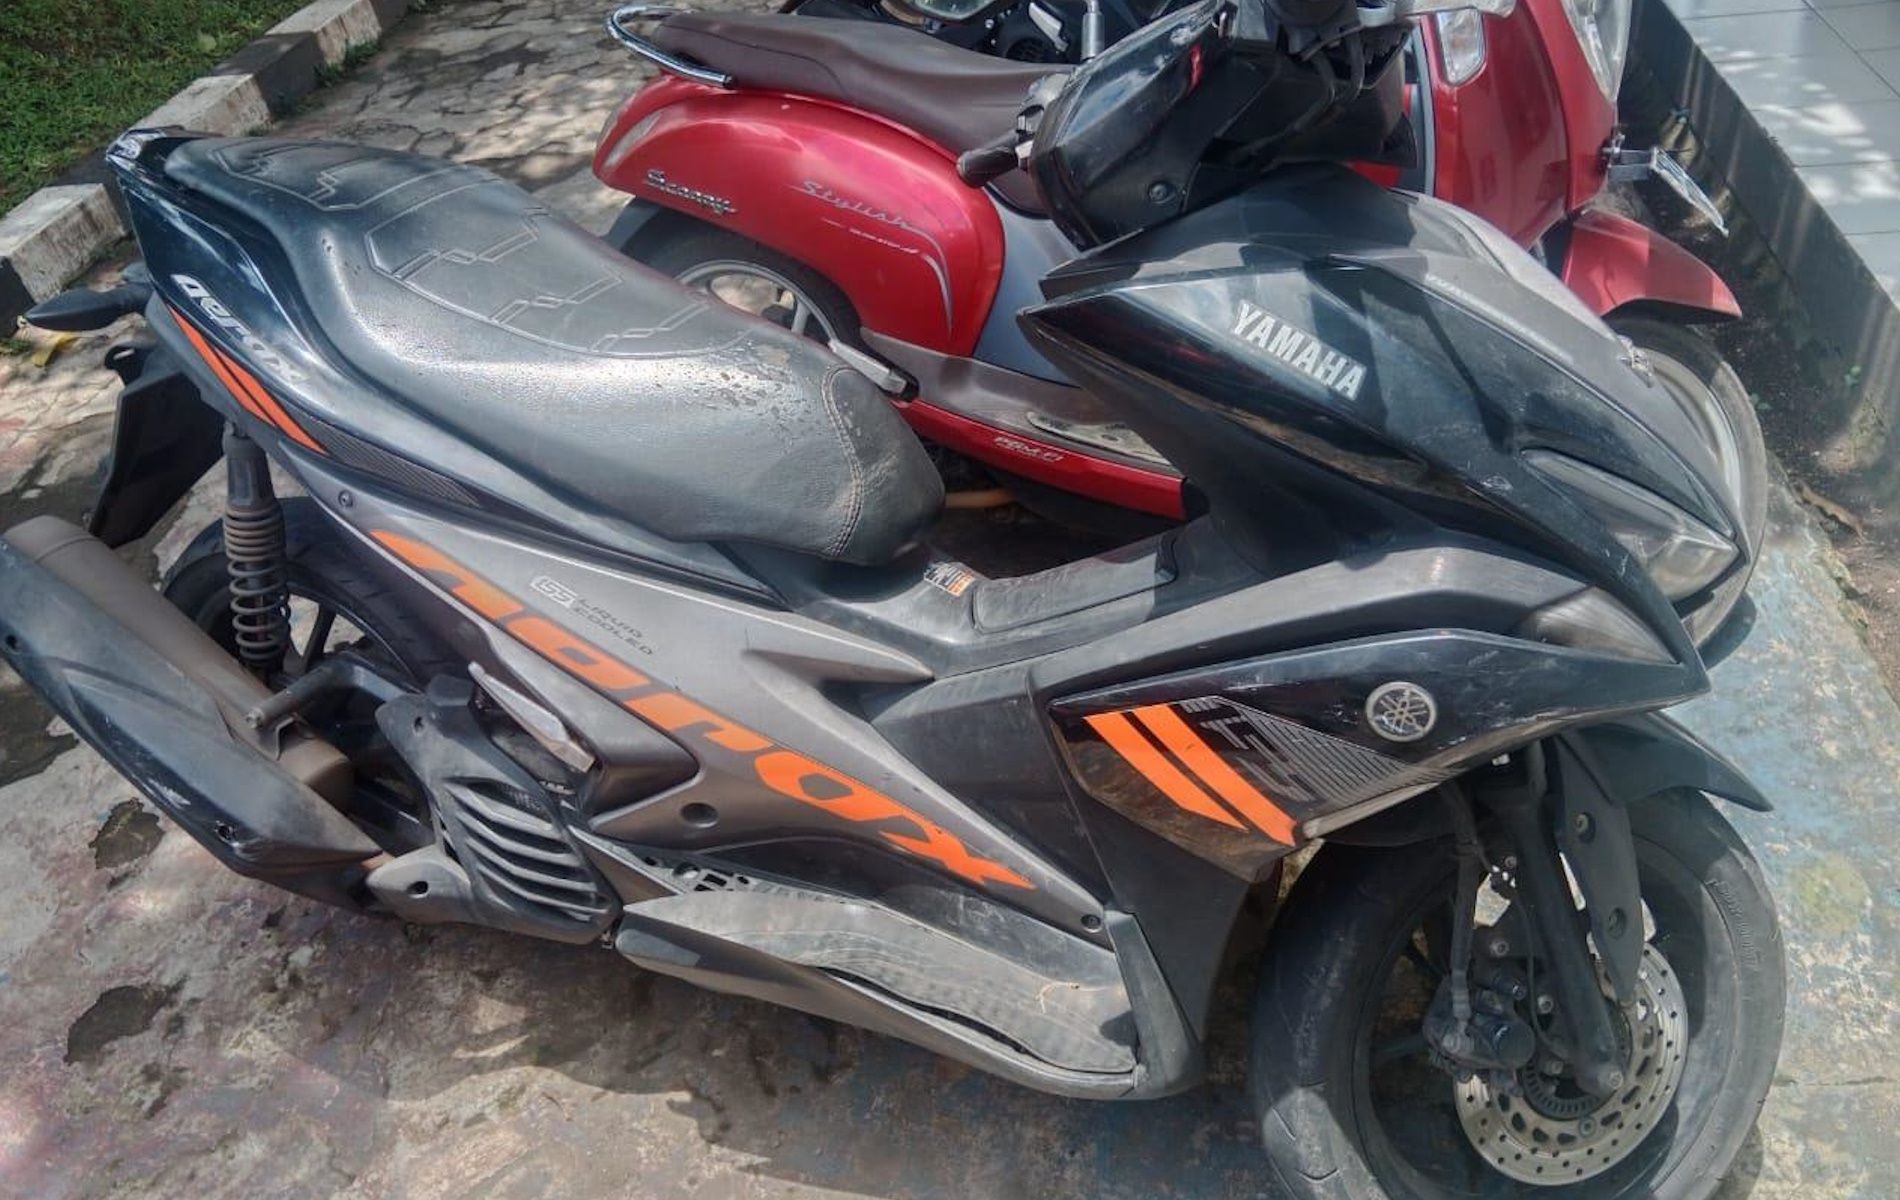 Barang bukti berupa motor Yamaha Aerox yang sempat dirampas para matel di Parung, Bogor, Jawa Barat.